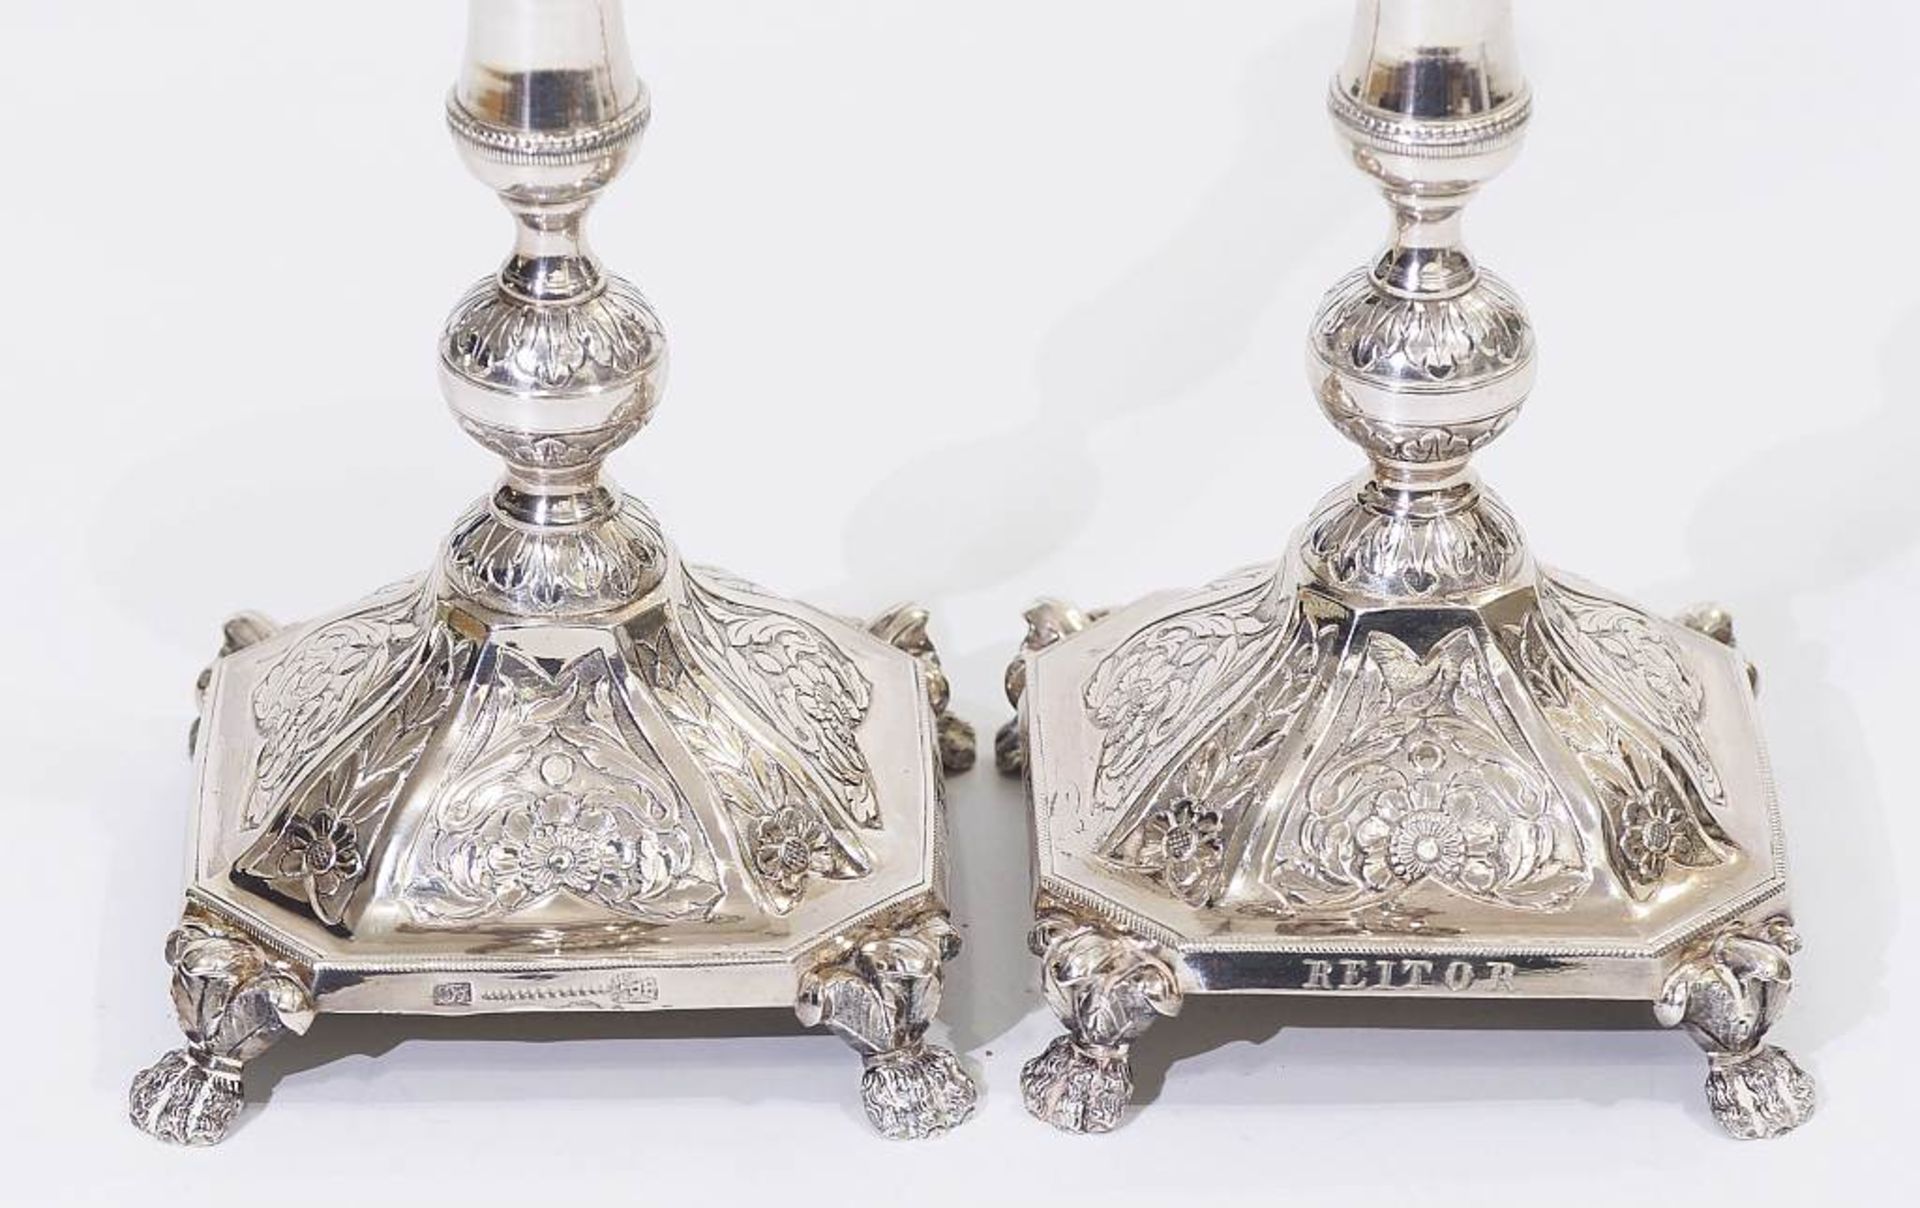 Paar Kerzenleuchter, datiert 1848. Paar Kerzenleuchter, datiert 1848. Silber, getrieben, graviert. - Image 4 of 7